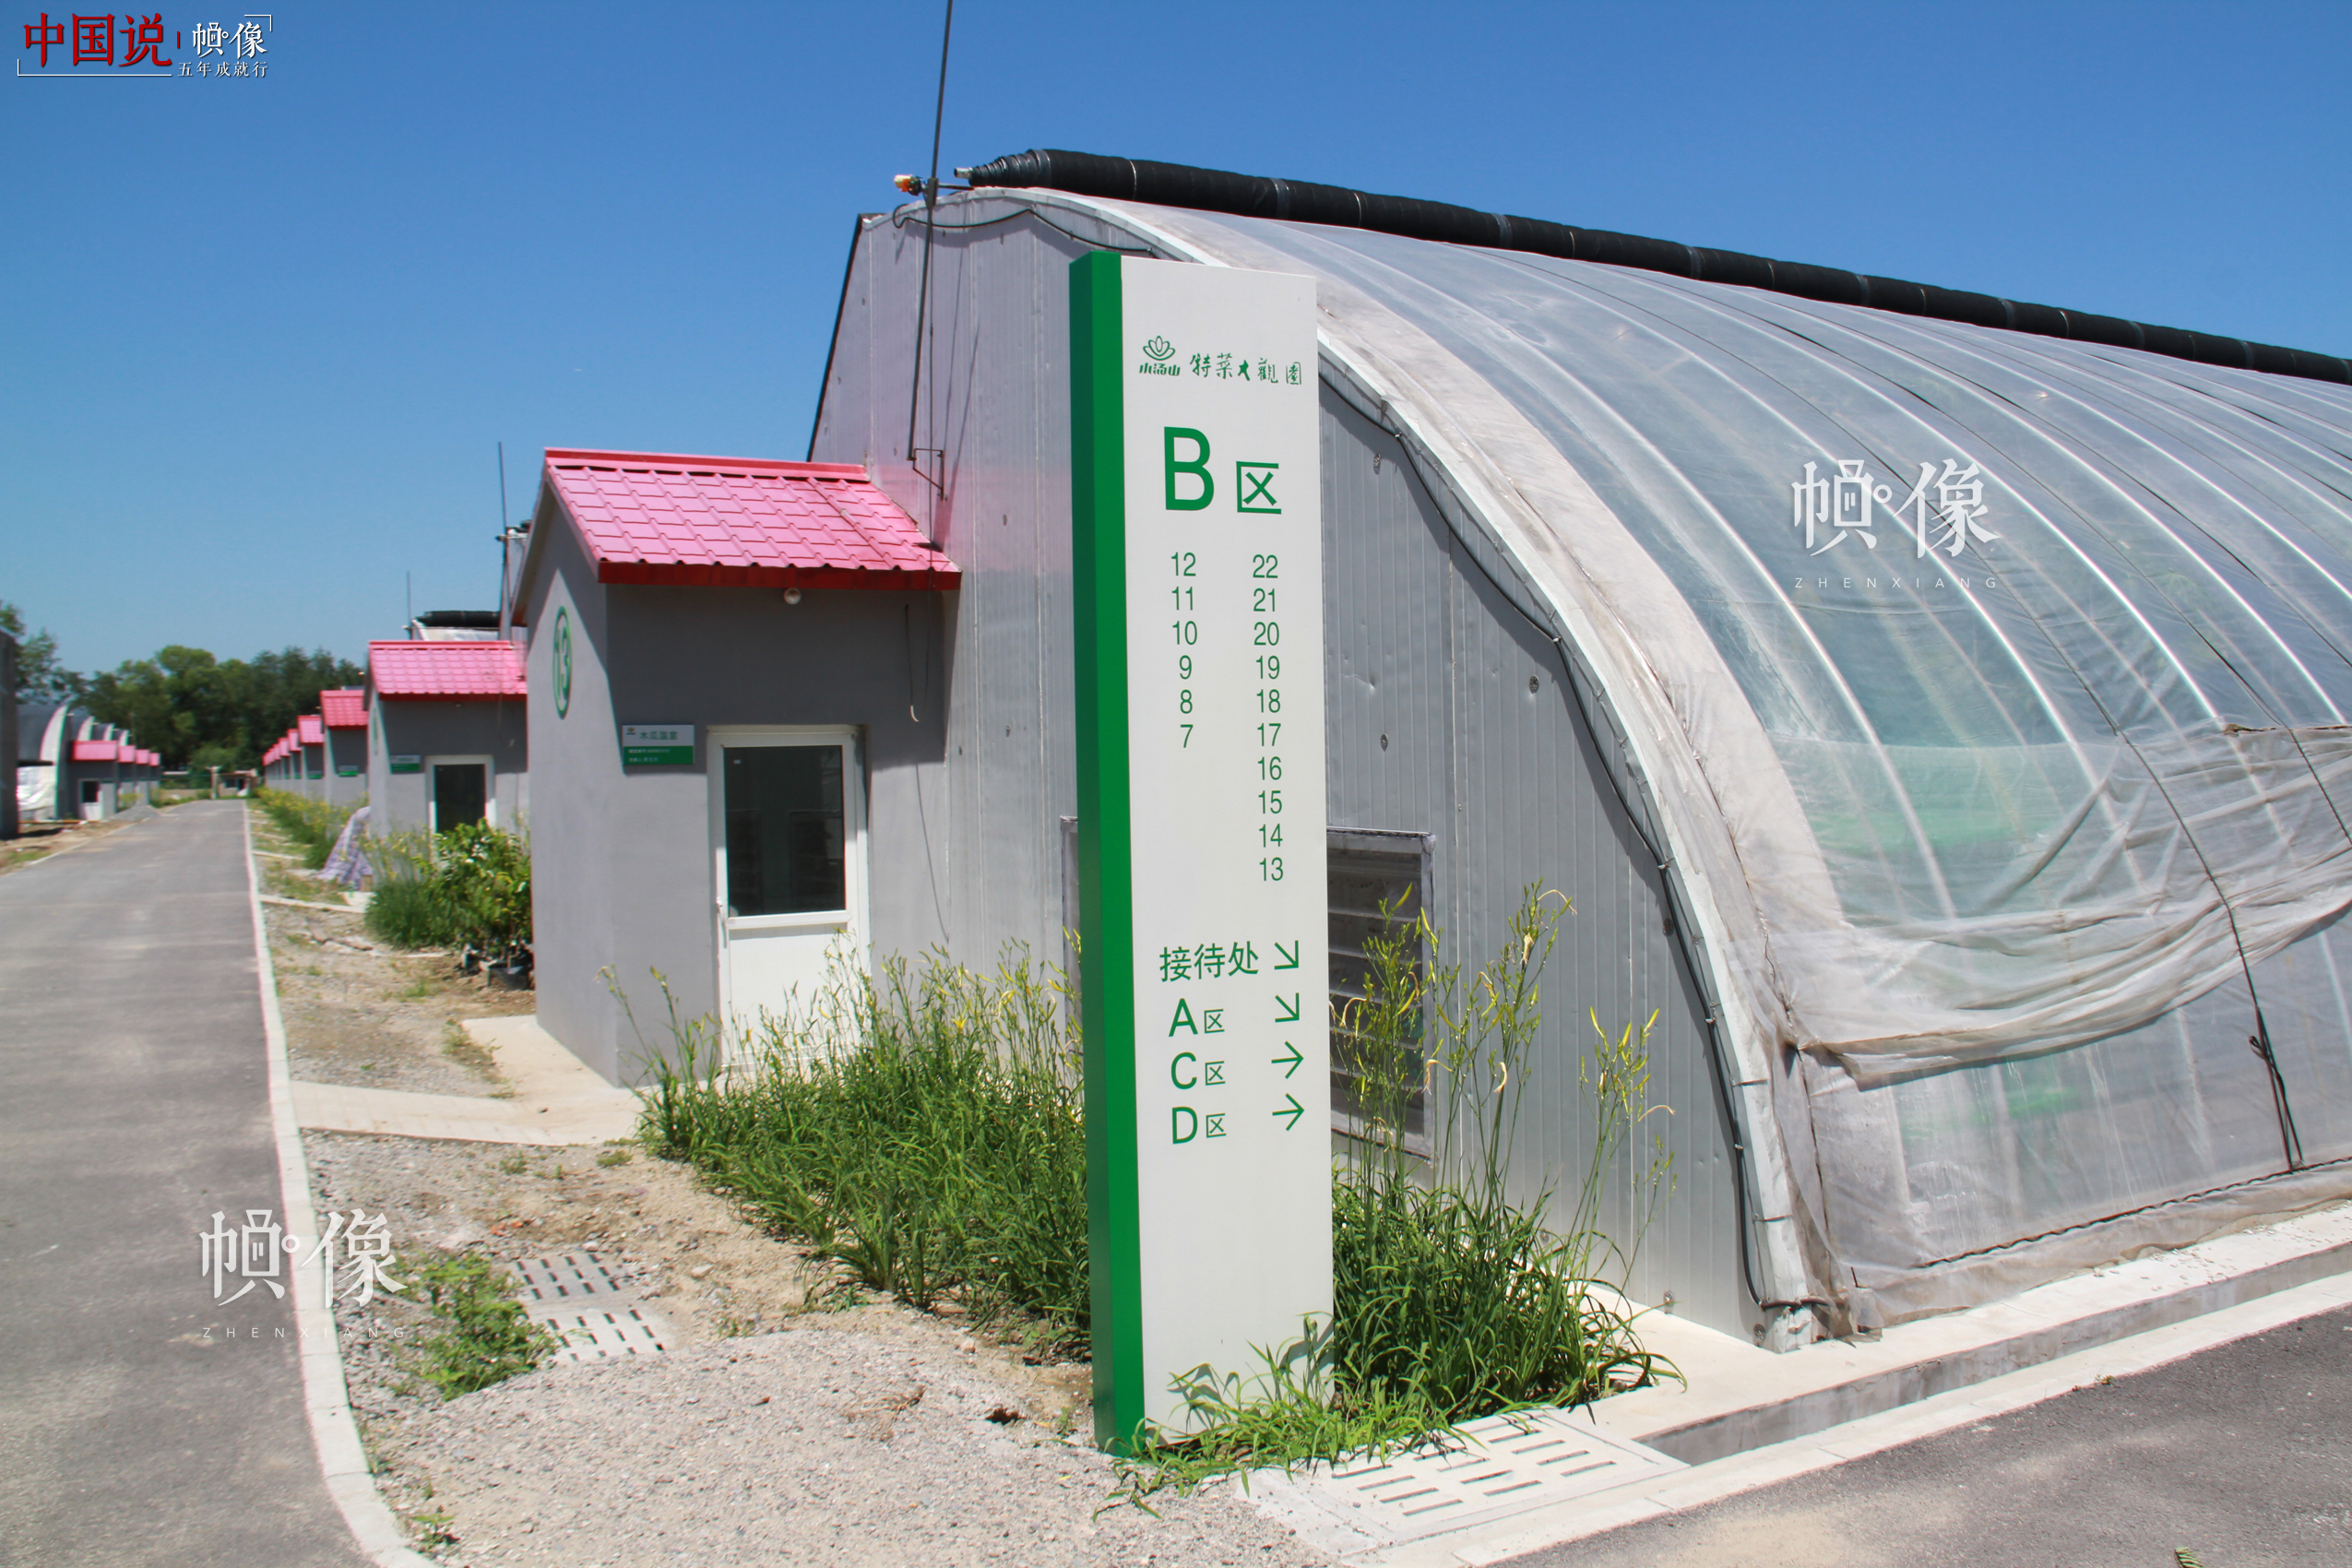 图为北京天安农业小汤山特菜基地蔬菜大棚。中国网记者 赵超 摄